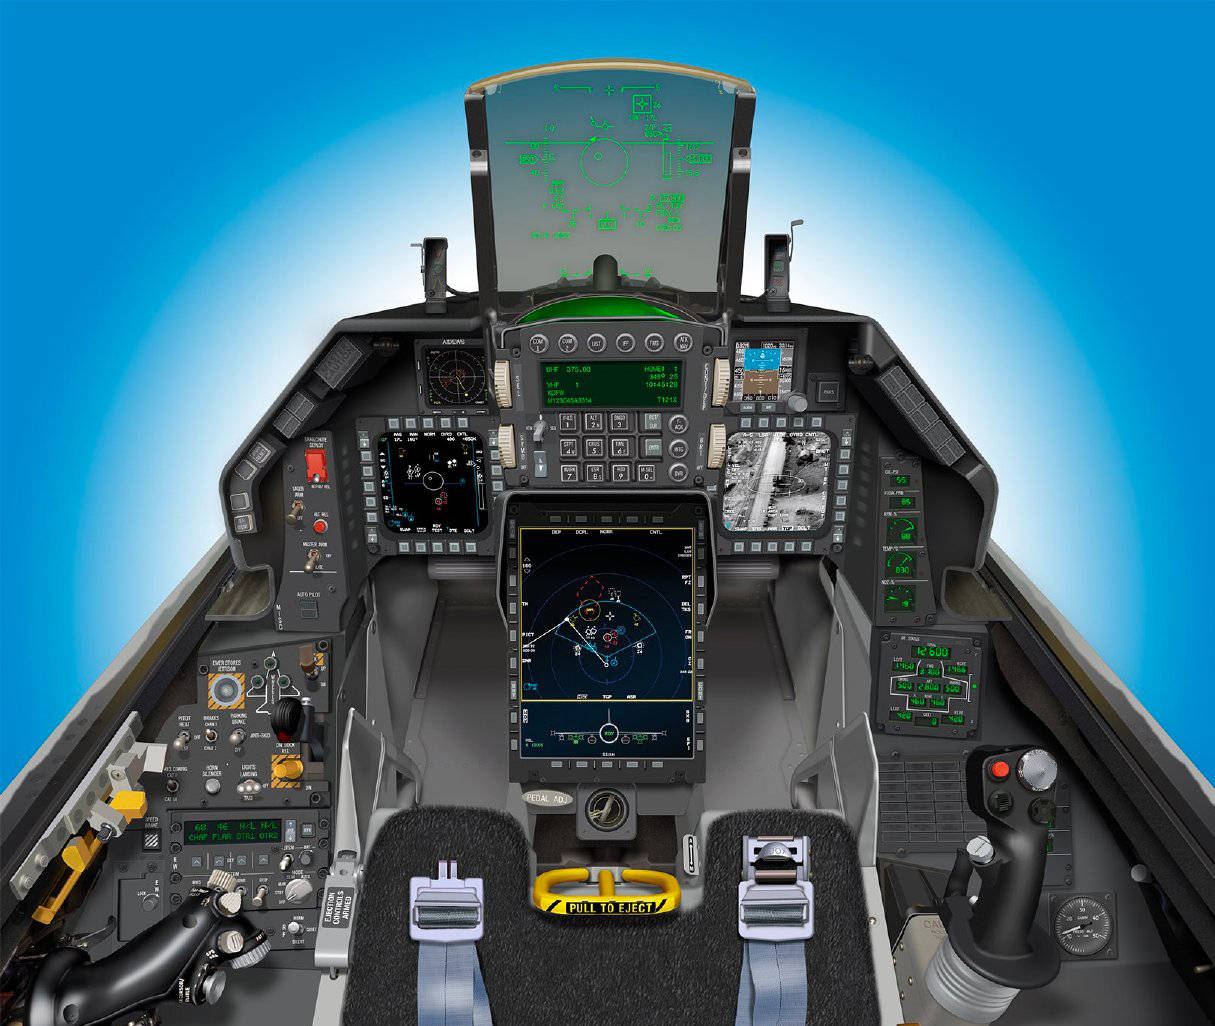 原创f16战斗机座舱进化史从仪表为主到全玻璃化见证科技的进步